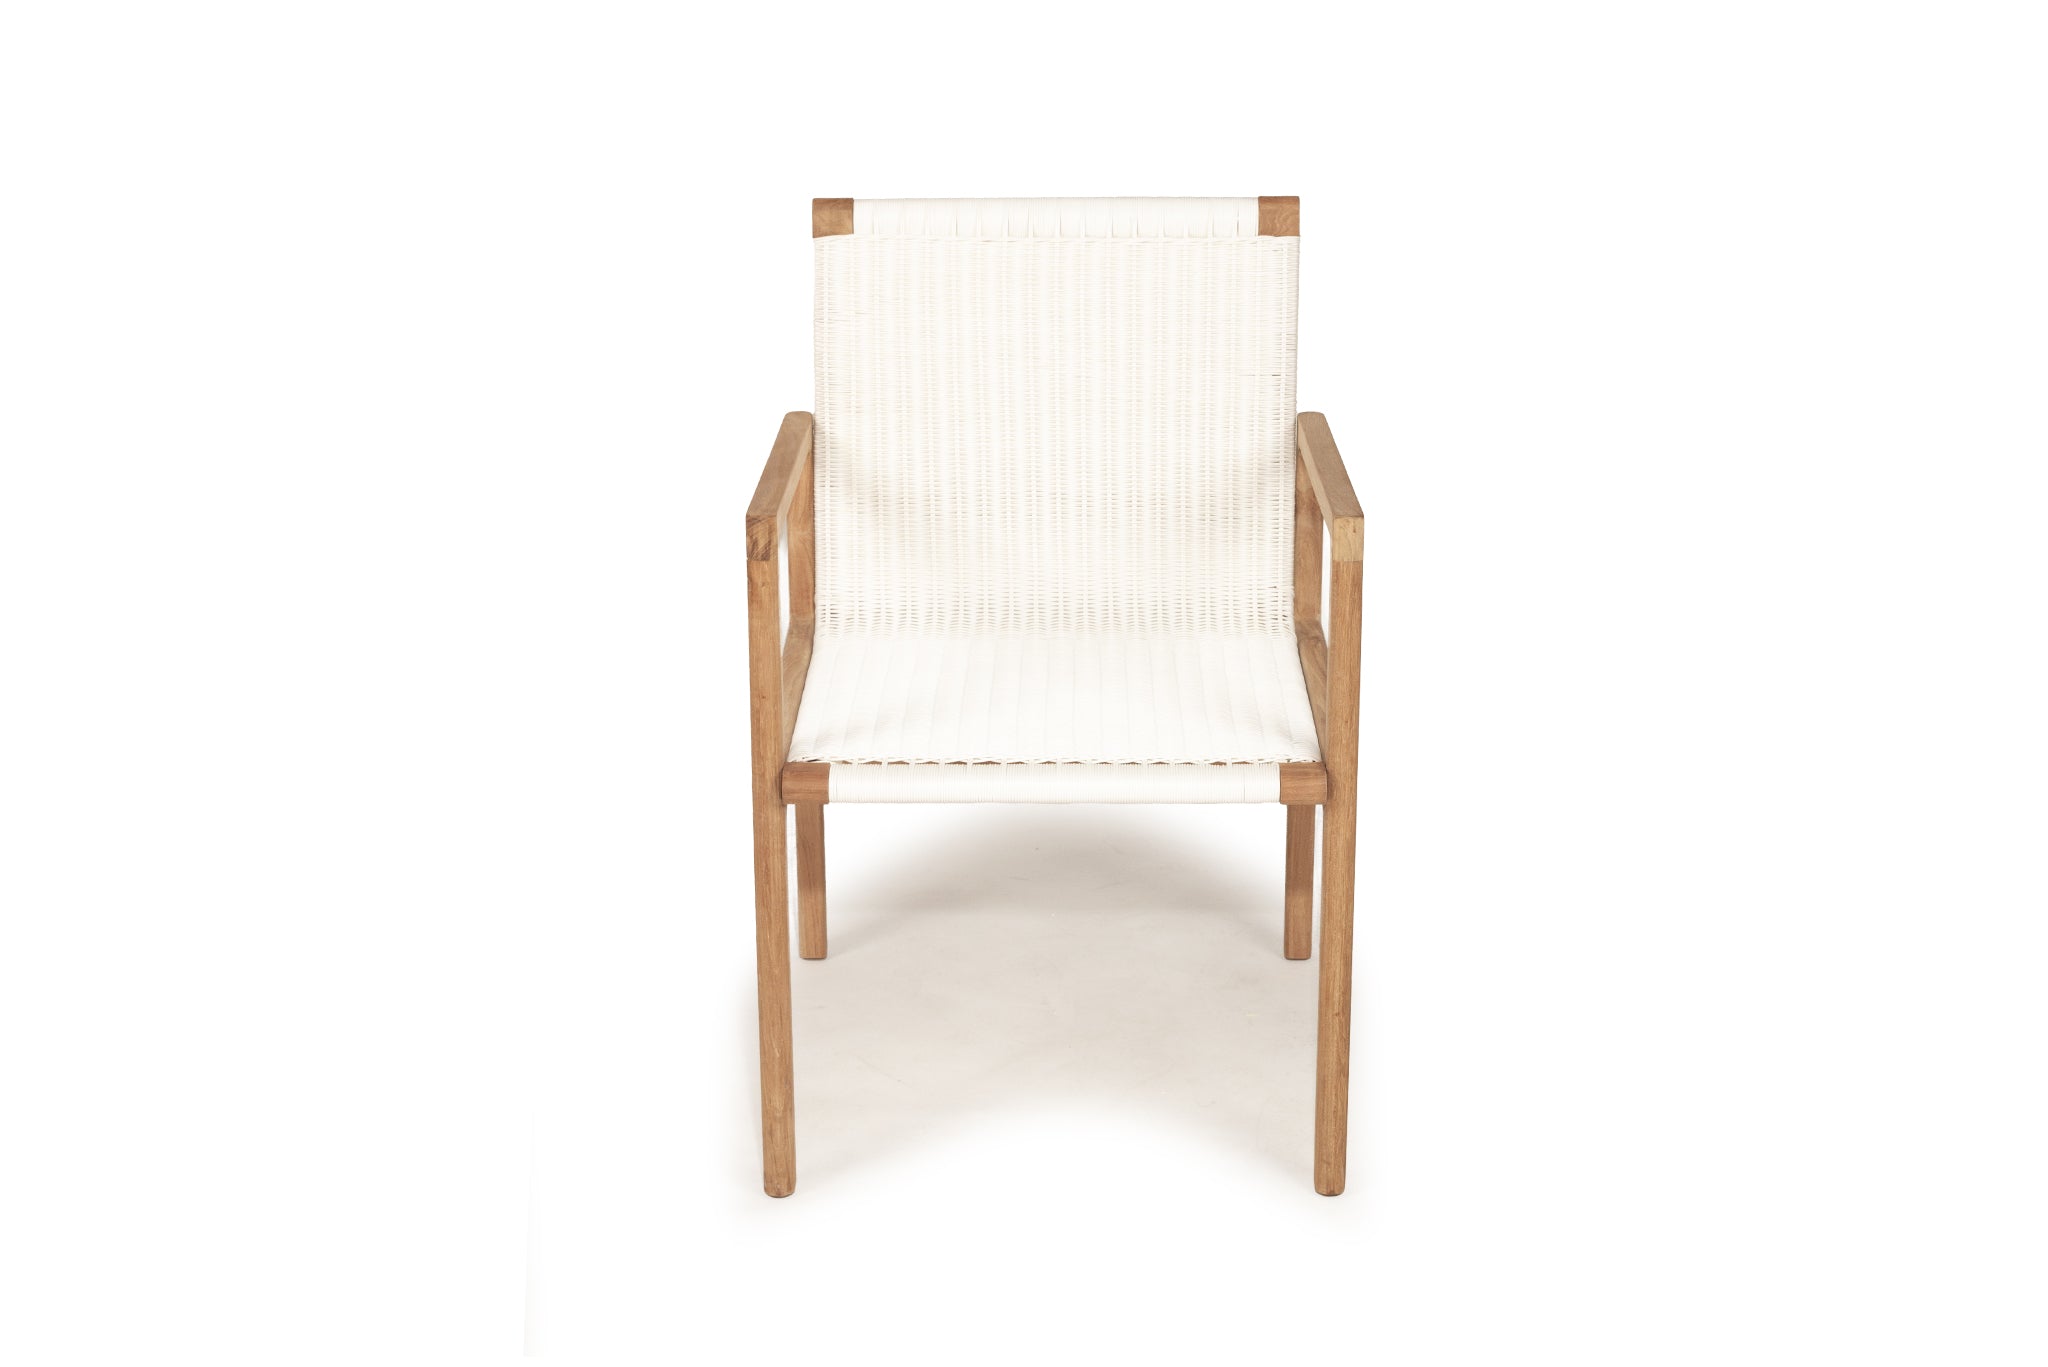 Anderson Teak Indoor/Outdoor Chair – White